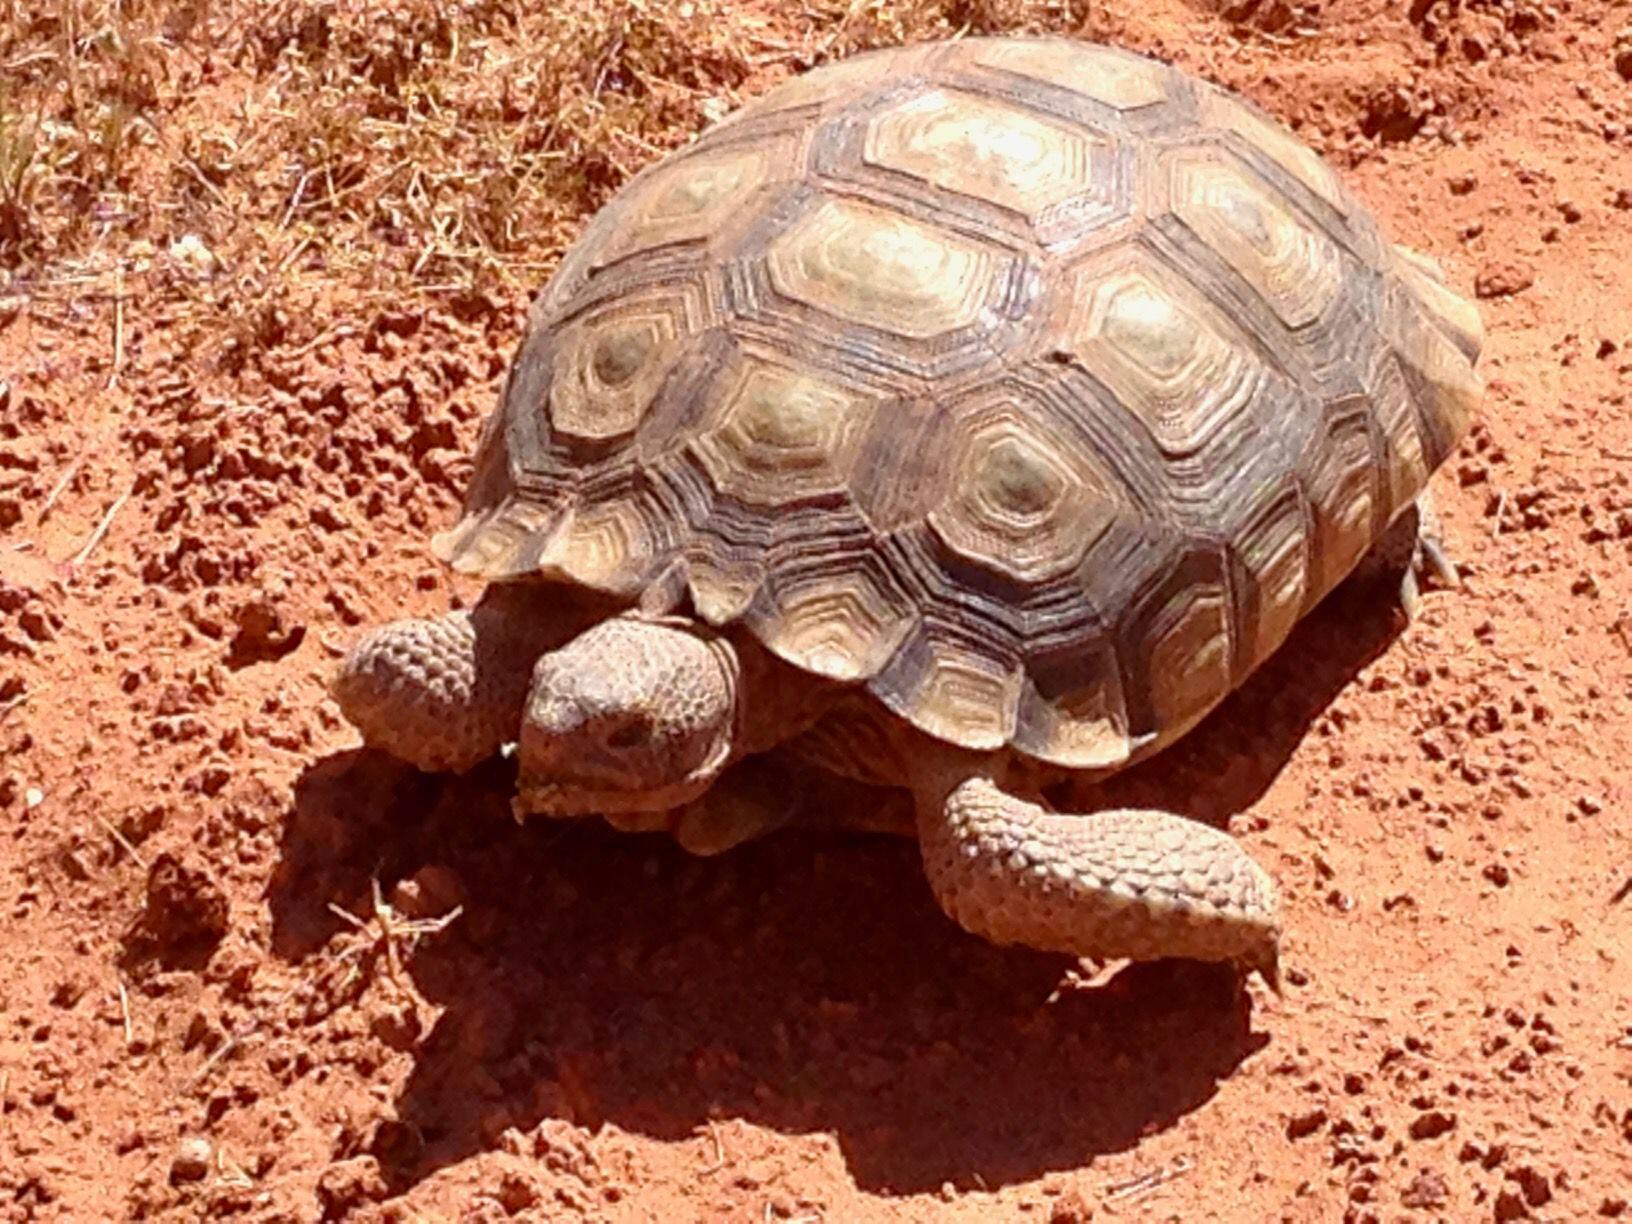 Mojave desert tortoises finding new homes as part of state adoption program